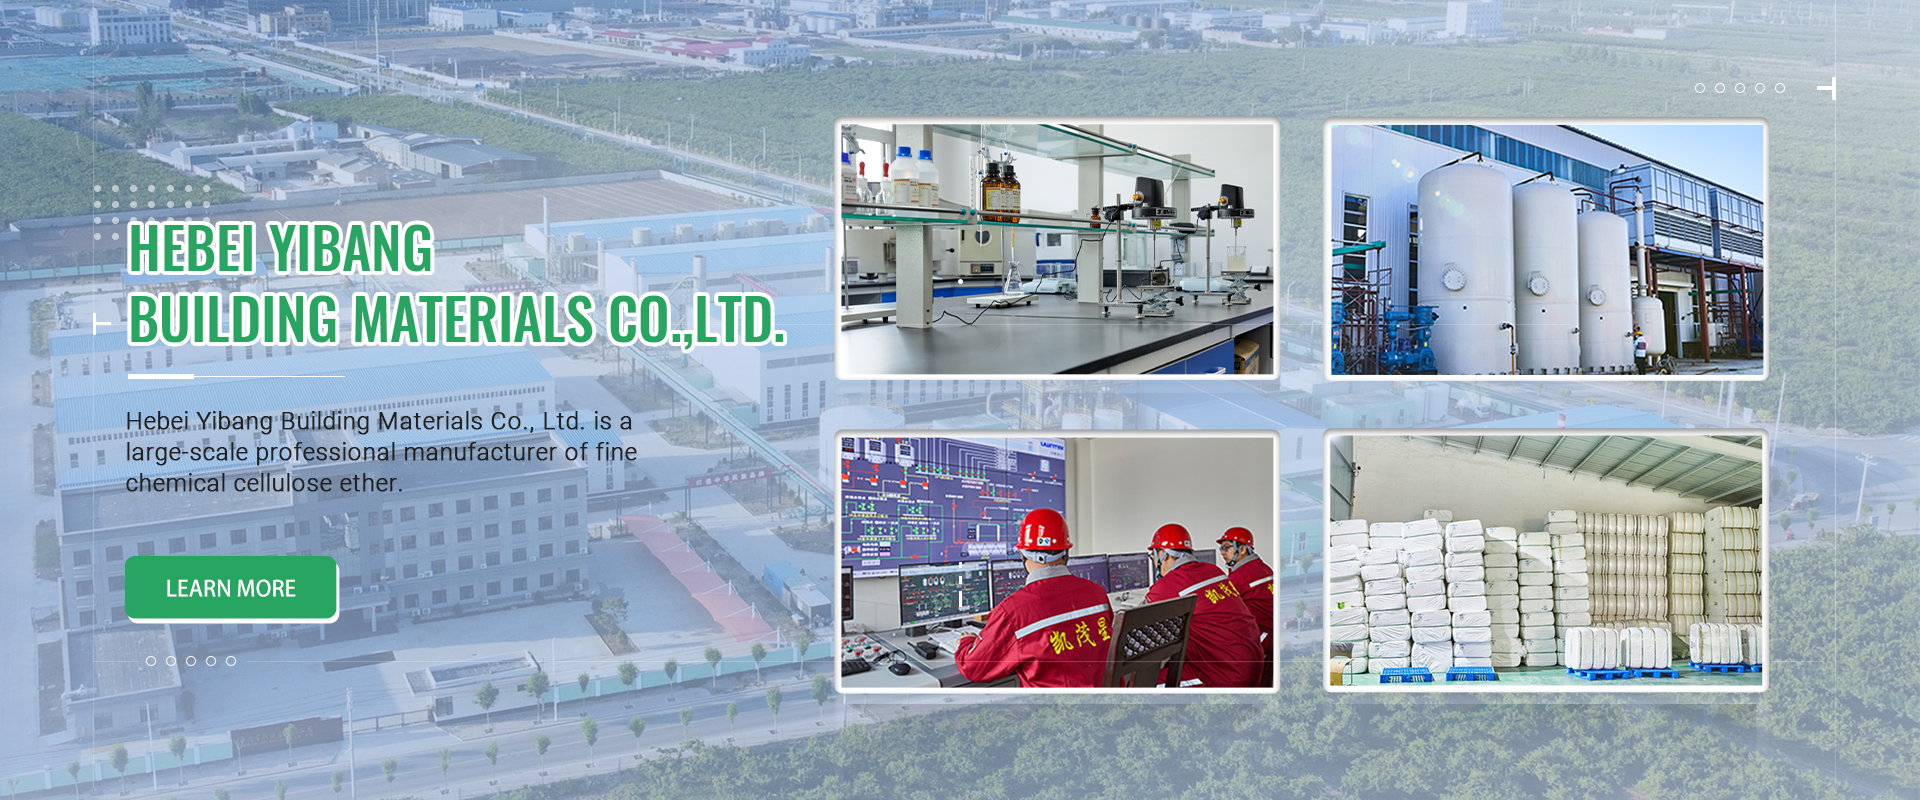 Yibang selülozu neden Hebei, Çin'deki en büyük selüloz ihracat fabrikası haline gelebilir?